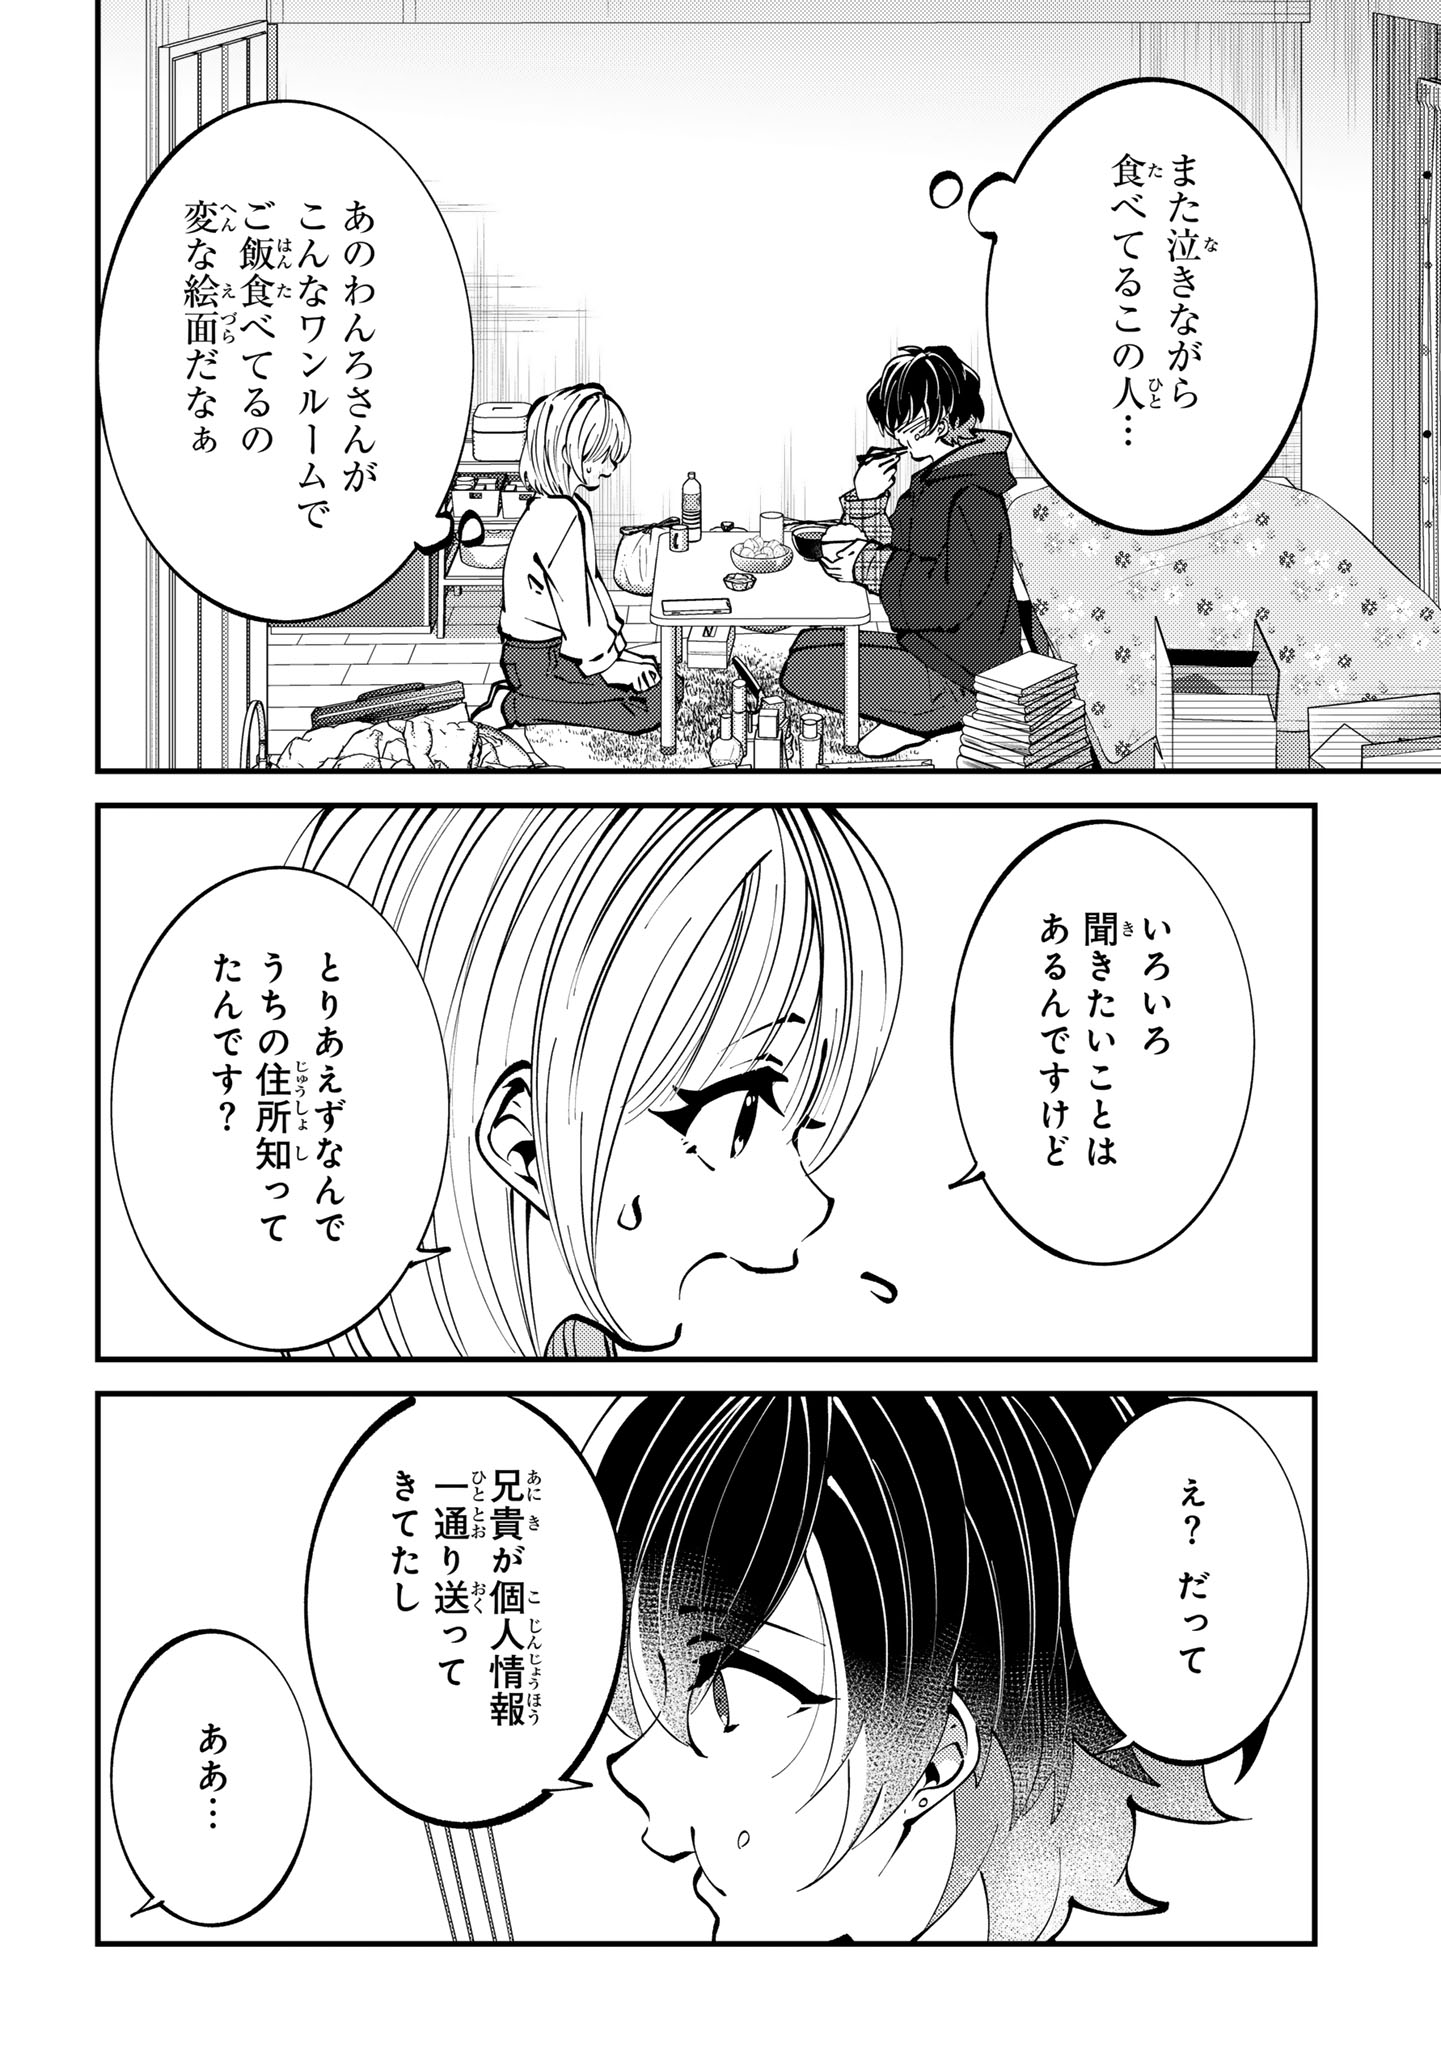 Oshi no Jikkyousha ni, Naze ka Dekiaisareteimasu - Chapter 3 - Page 2